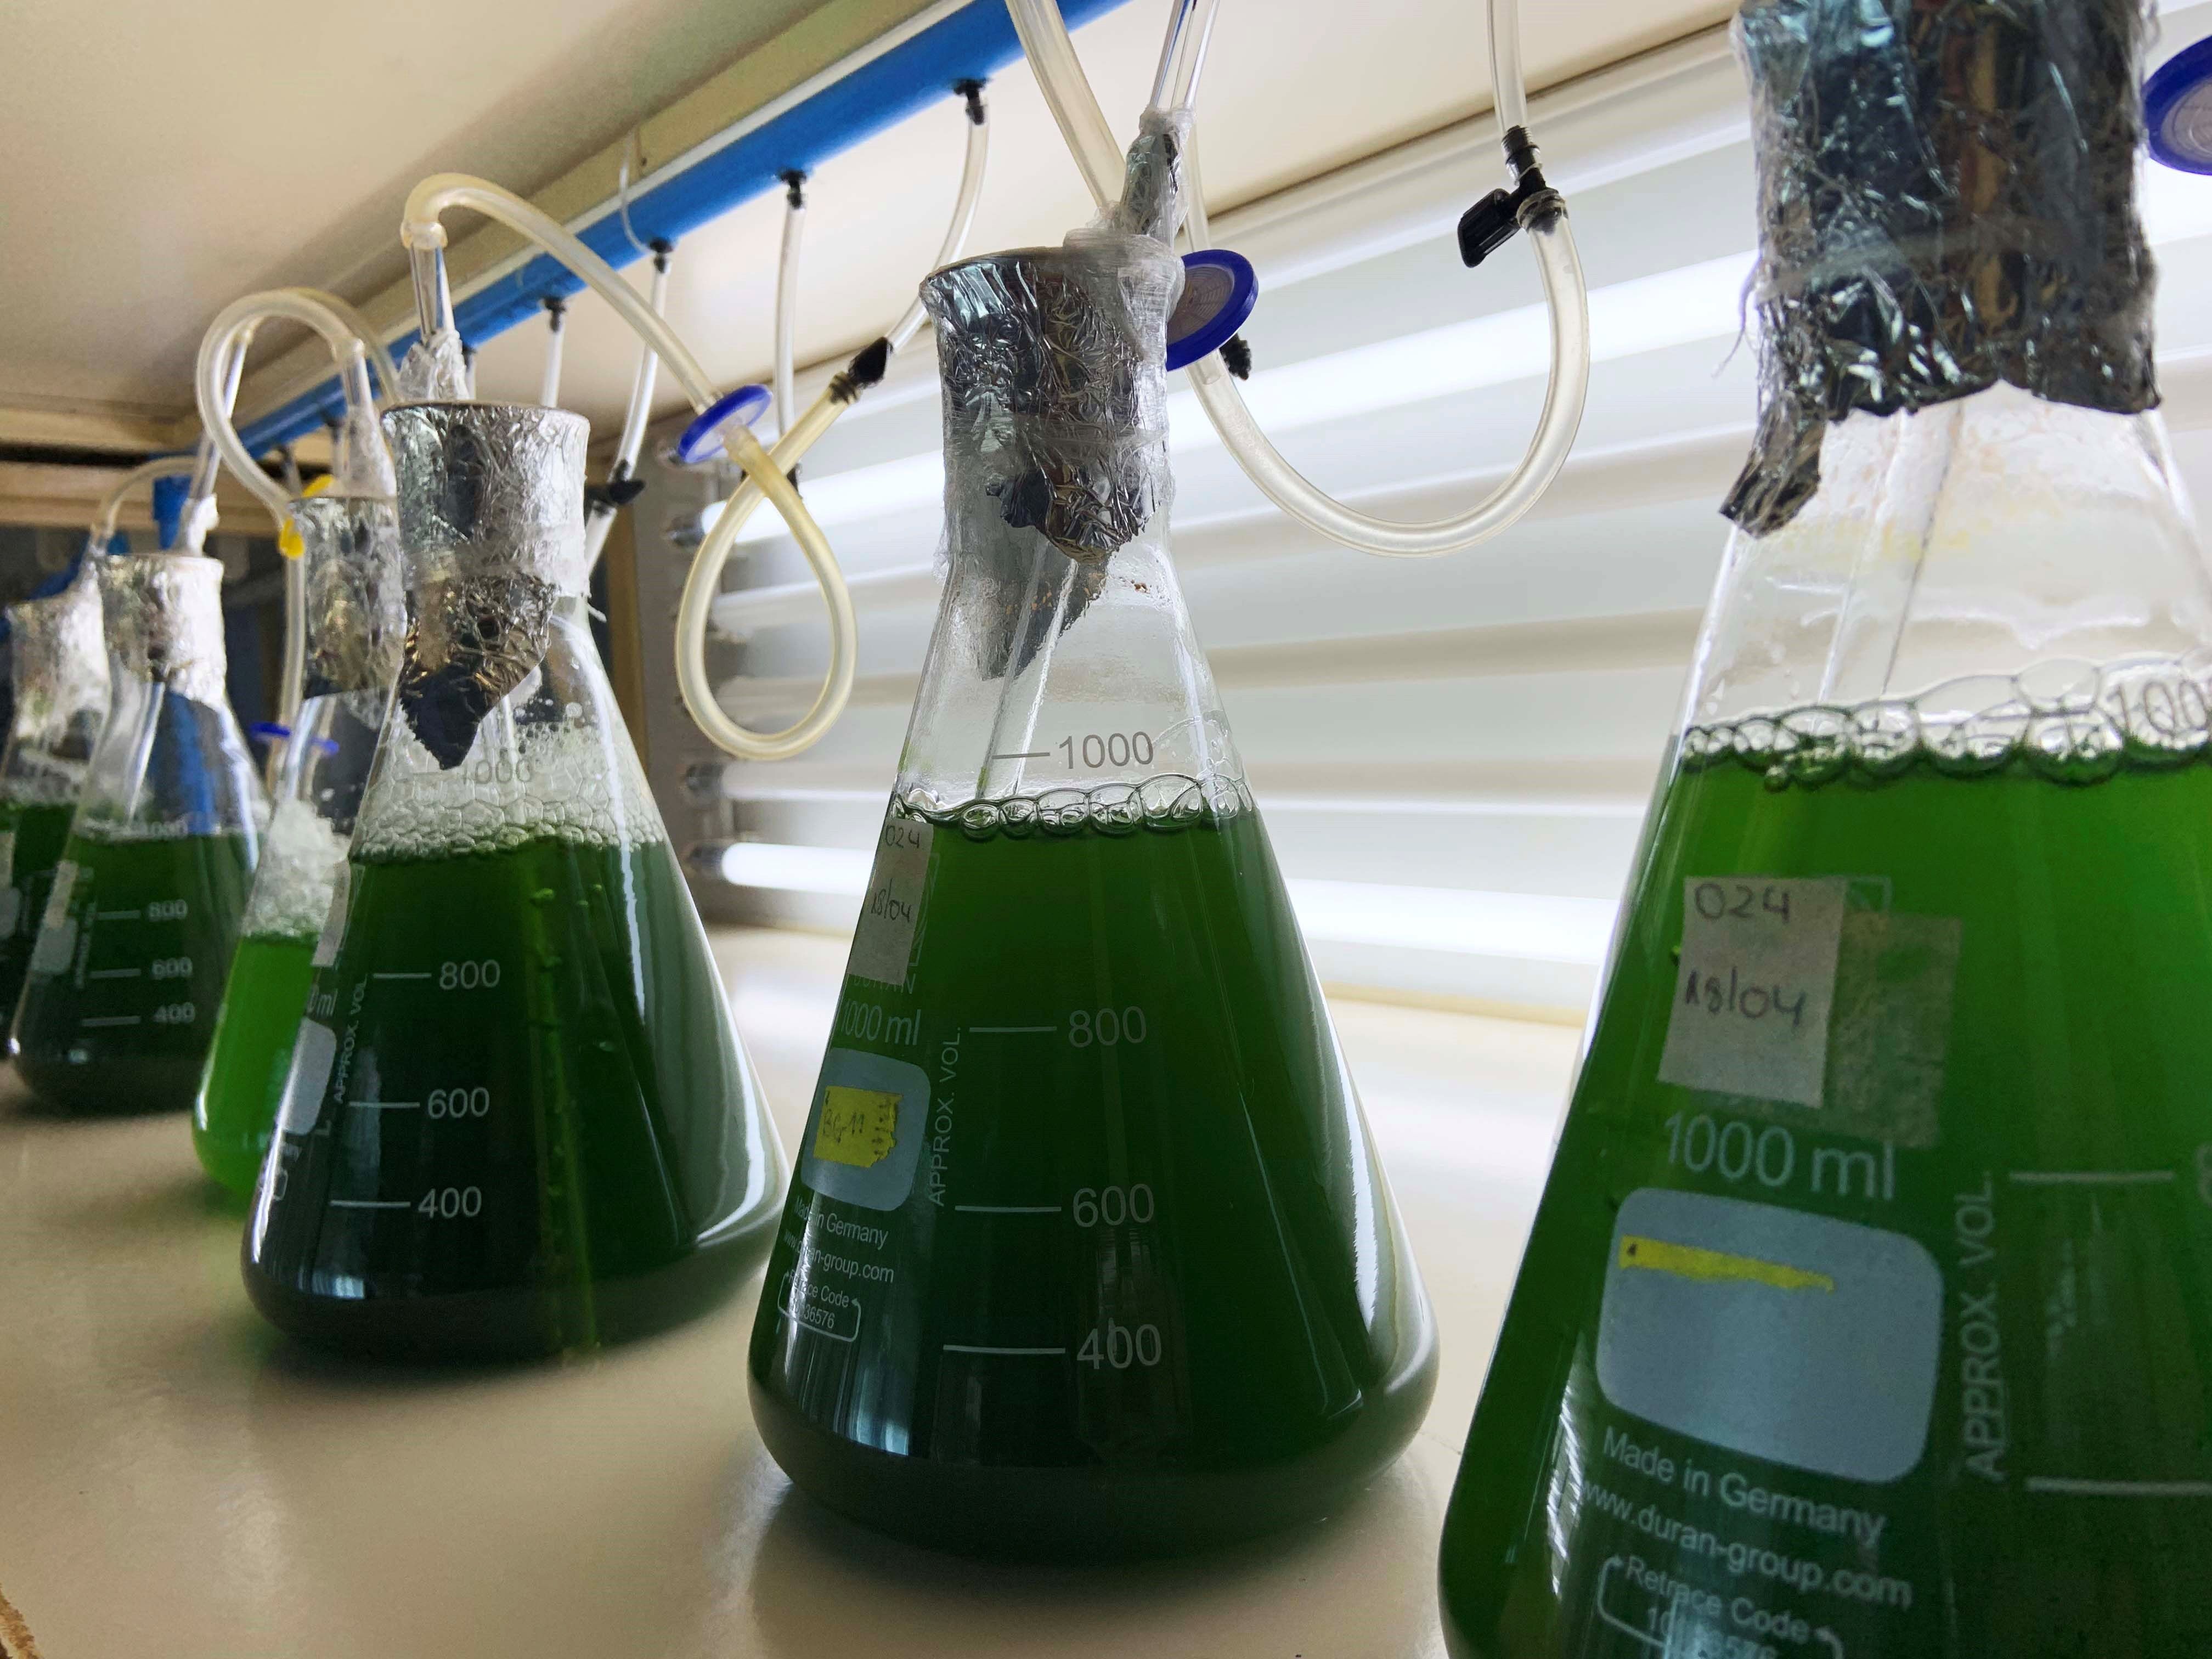 Las algas marinas han sido utilizadas para diversos estudios científicos debido a las propiedades que presenta. (Foto Prensa Libre: EFE)